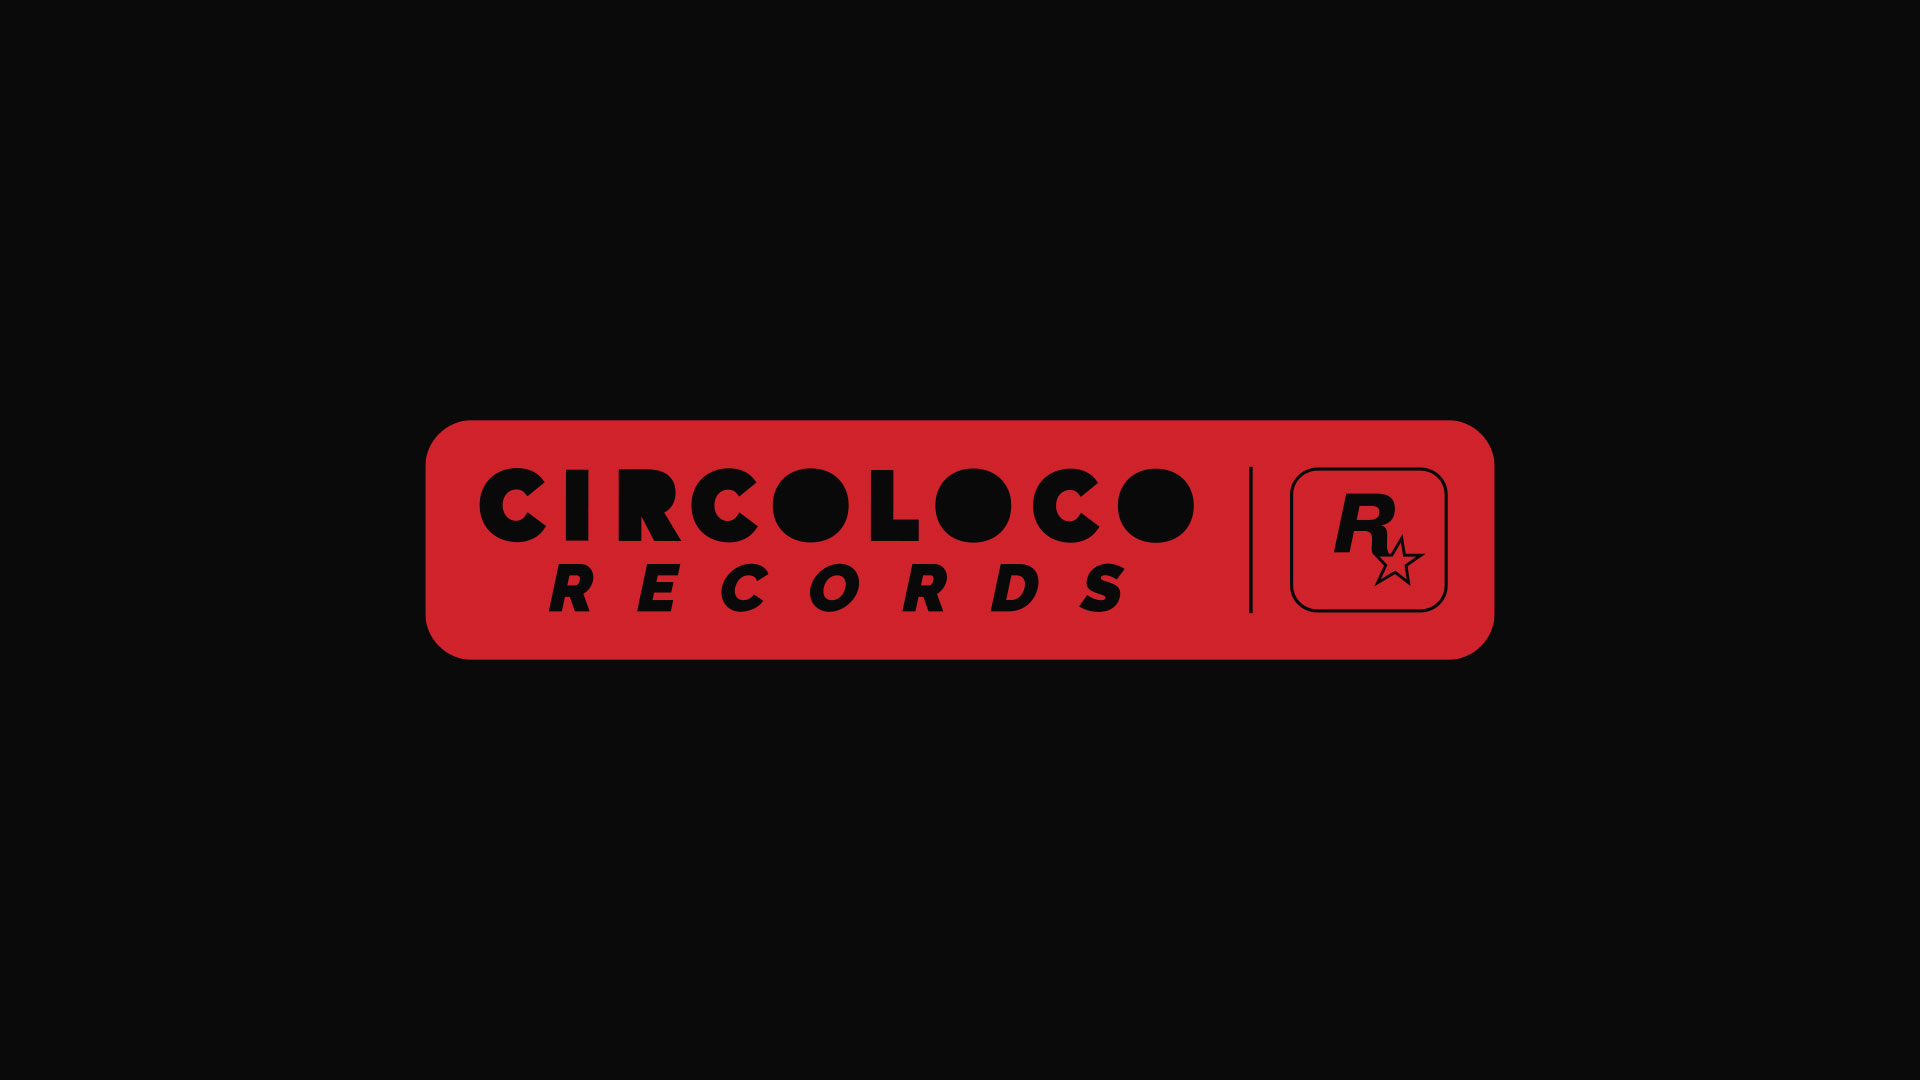 ロックスター・ゲームスがダンスミュージックレーベル「CircoLoco Records」を設立。7月のフルデジタルアルバム配信に先駆け、コンパクト盤を6月4日から毎週配信予定_001